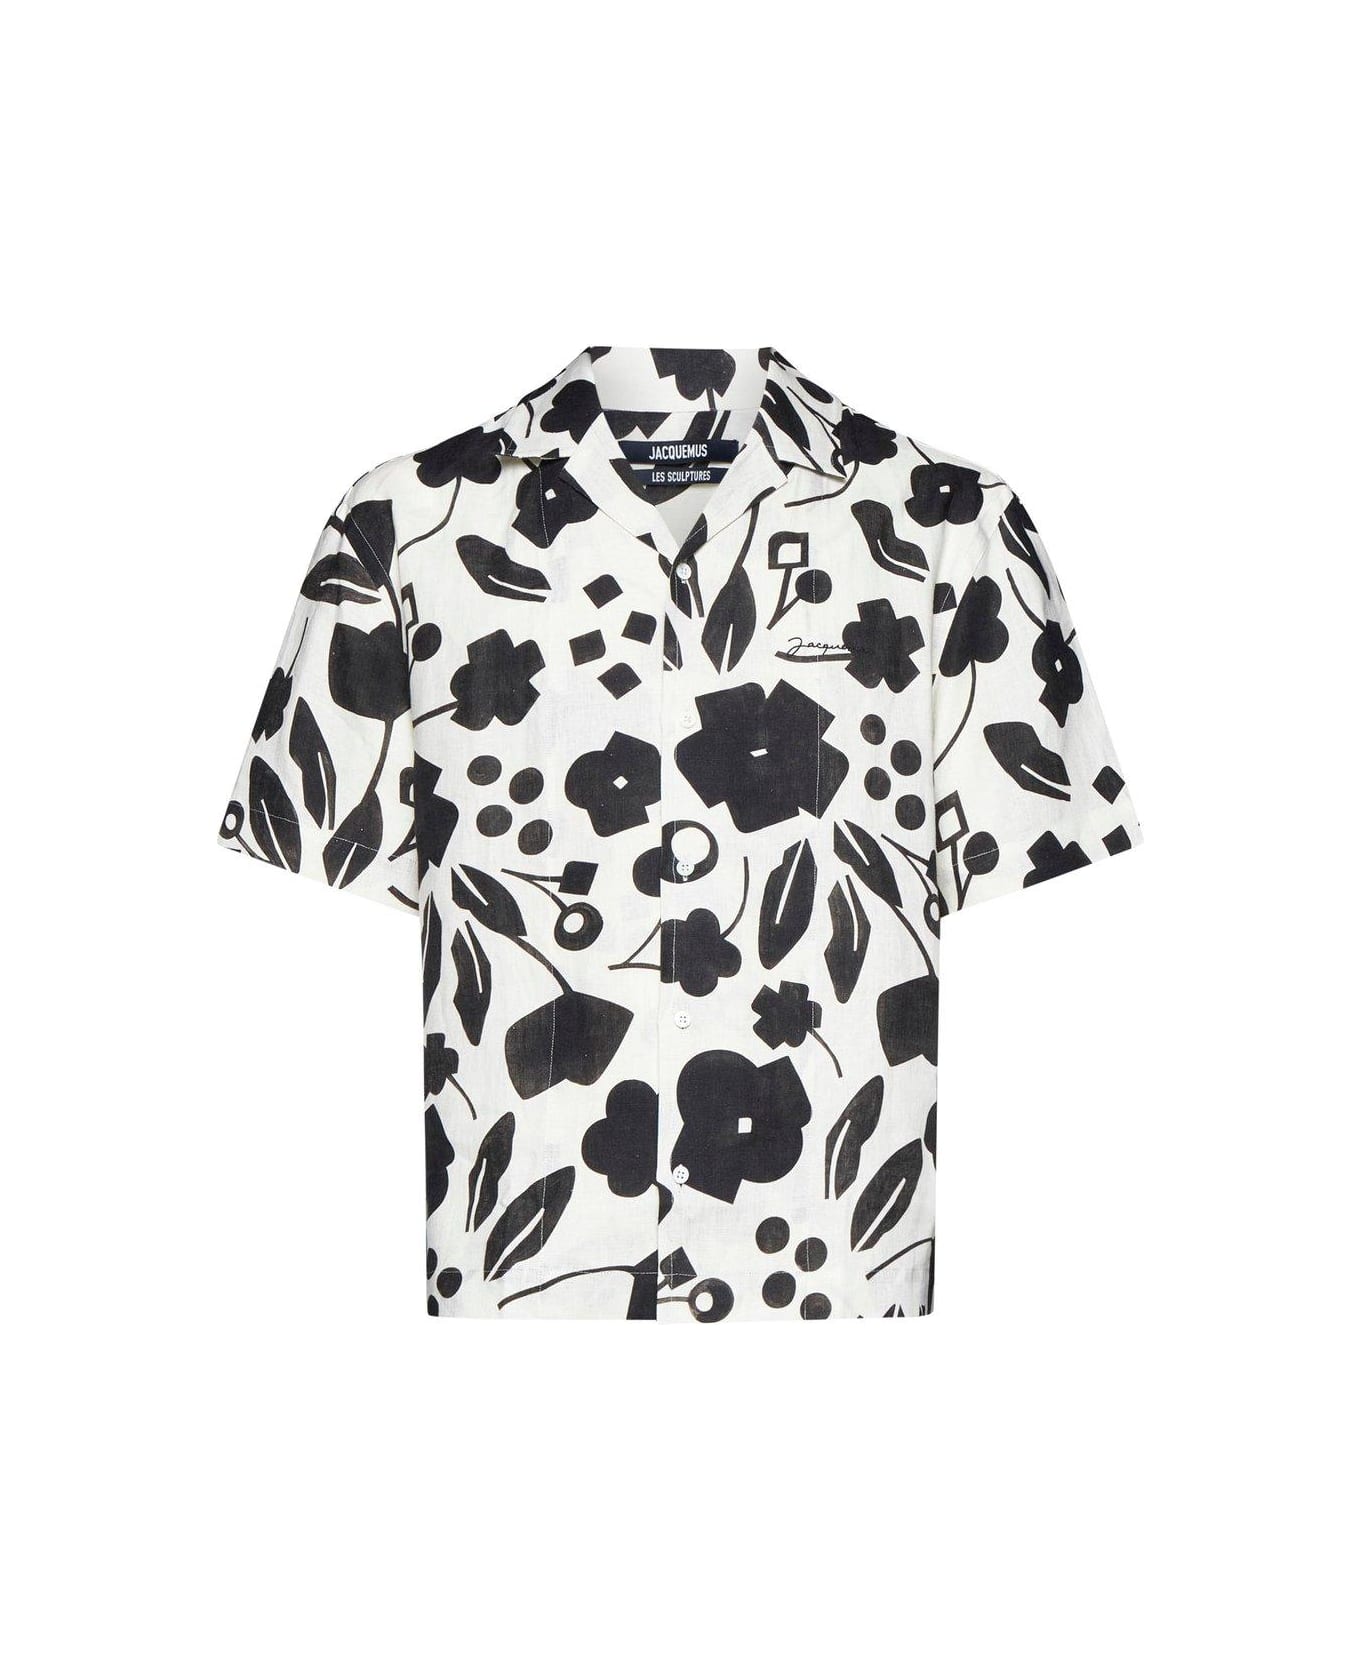 Jacquemus Shirt - Hc Pt Black White Cubic Flow